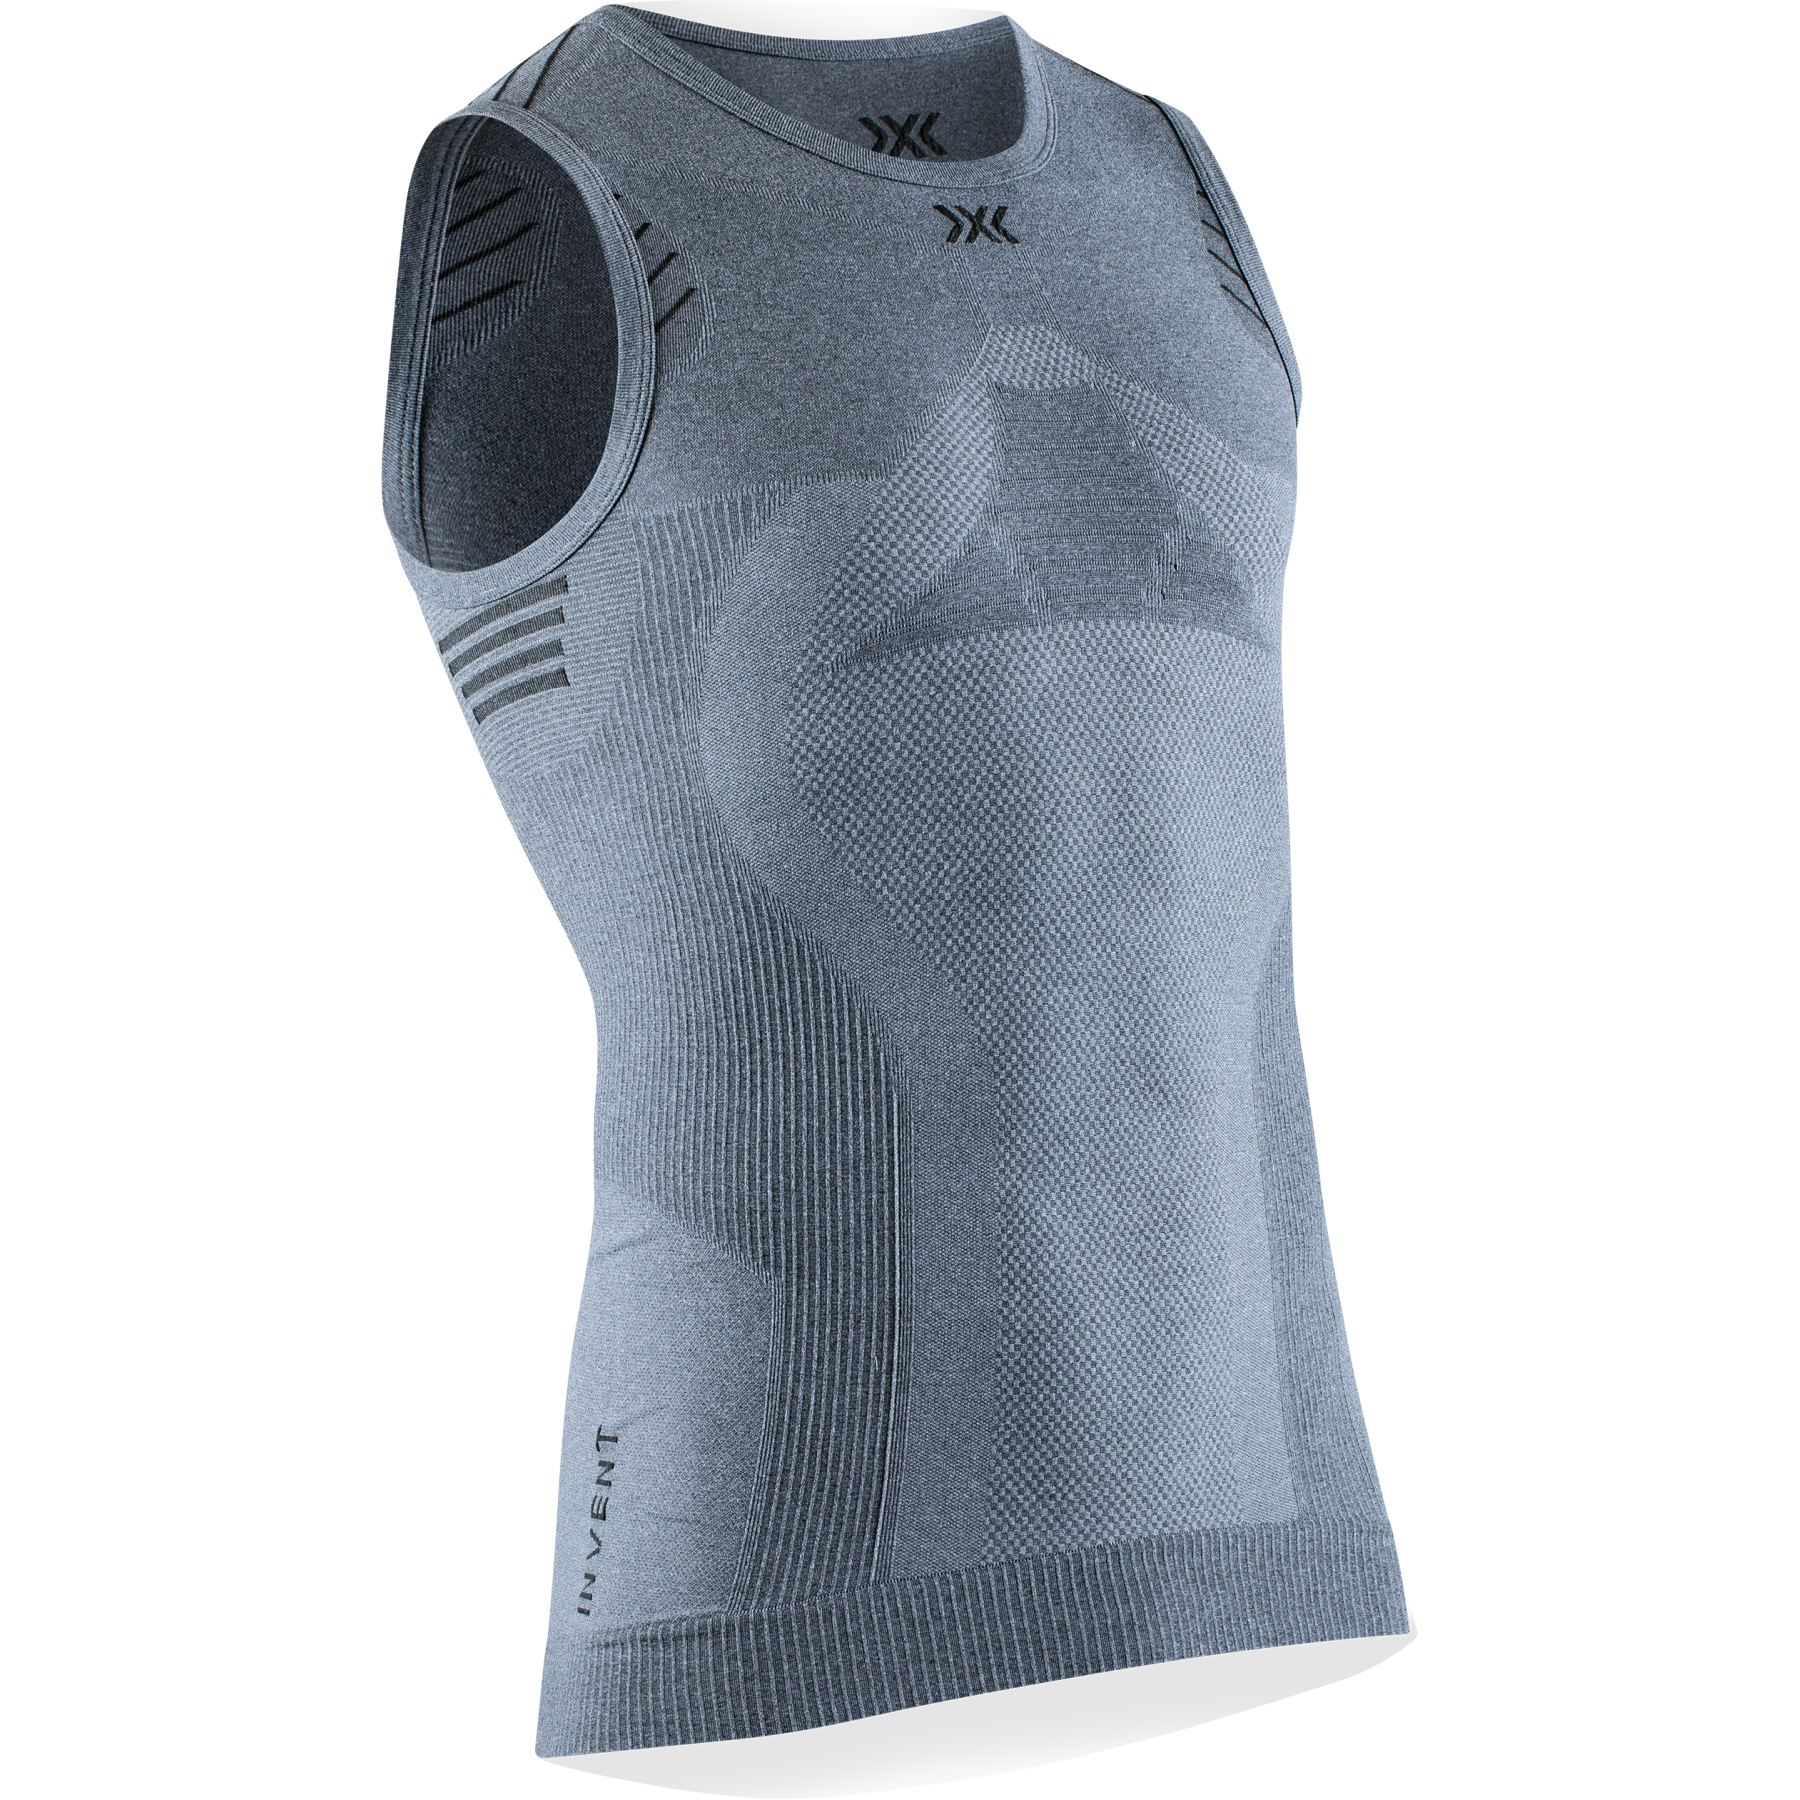 Bild von X-Bionic Invent 4.0 LT Singlet Unterhemd für Herren - grey melange/anthracite